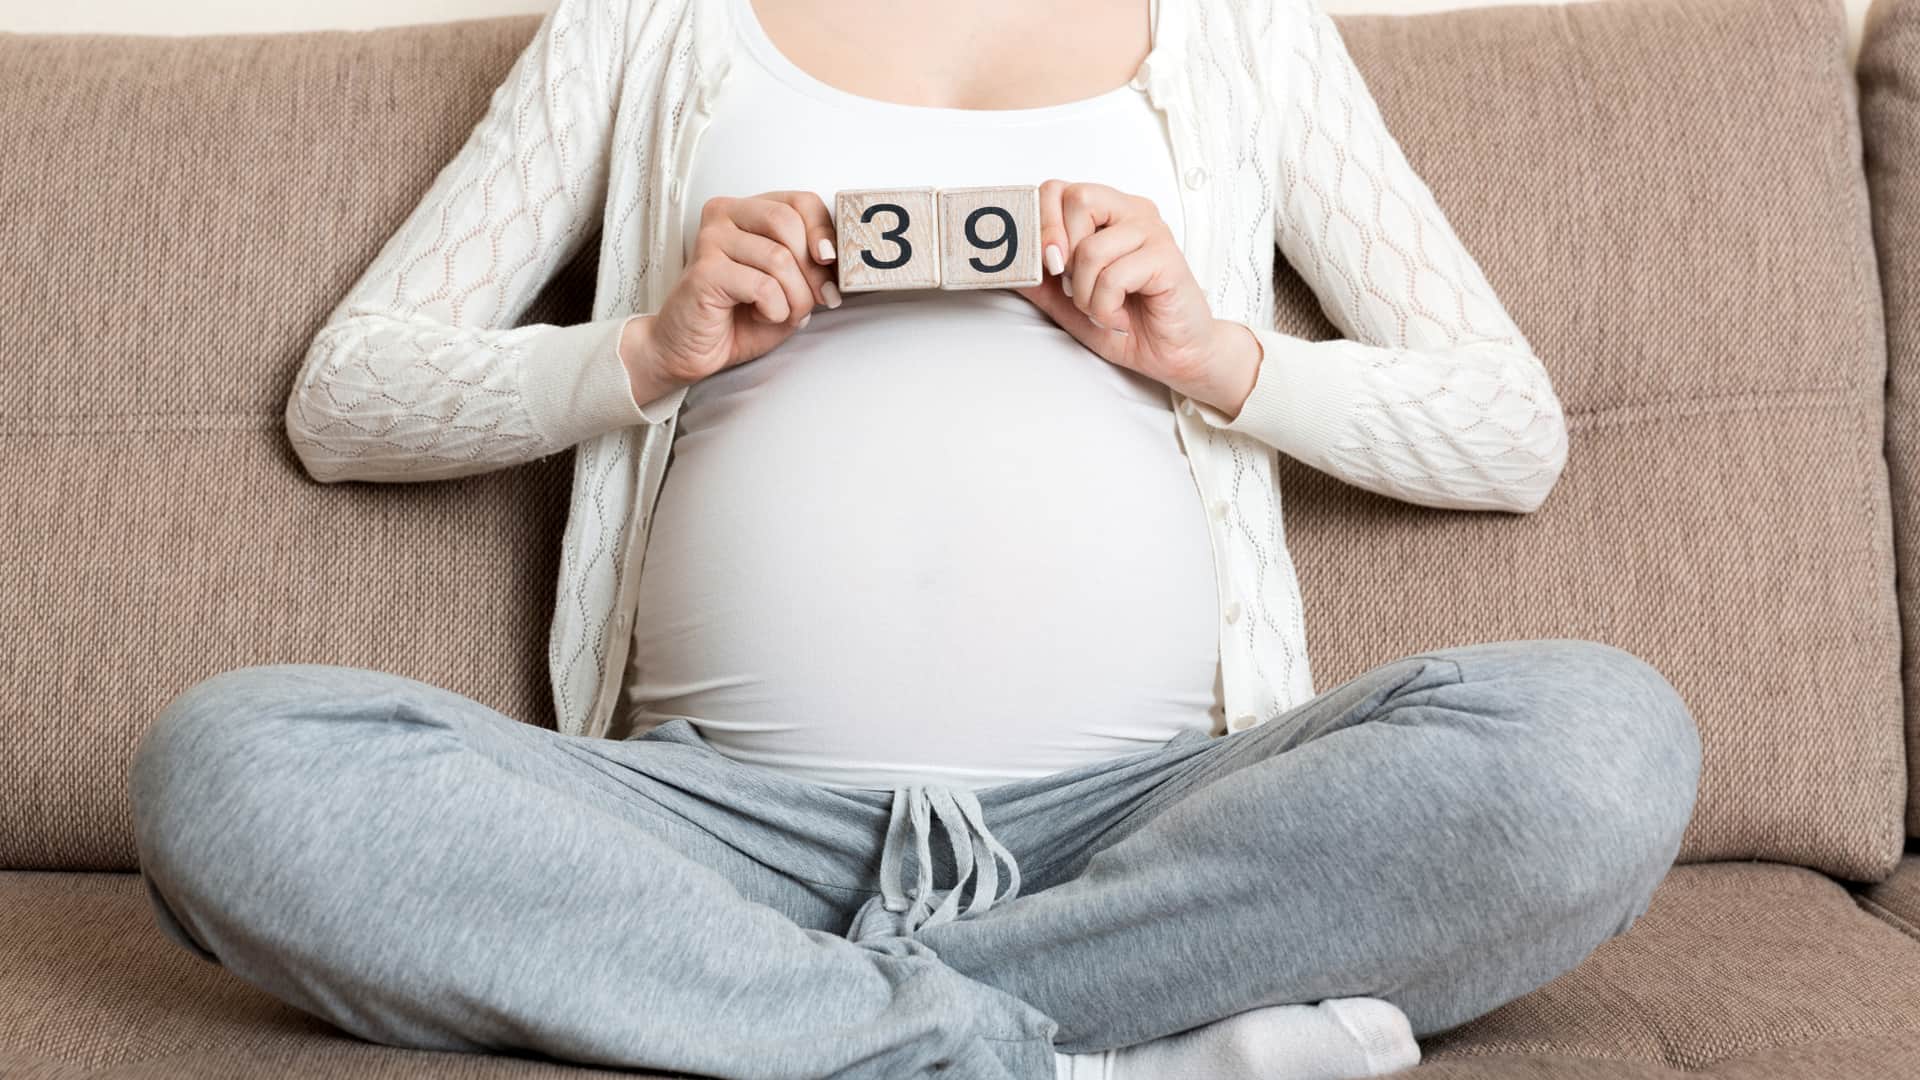 39 semanas de embarazo: te pondrán en monitores si presentas contracciones